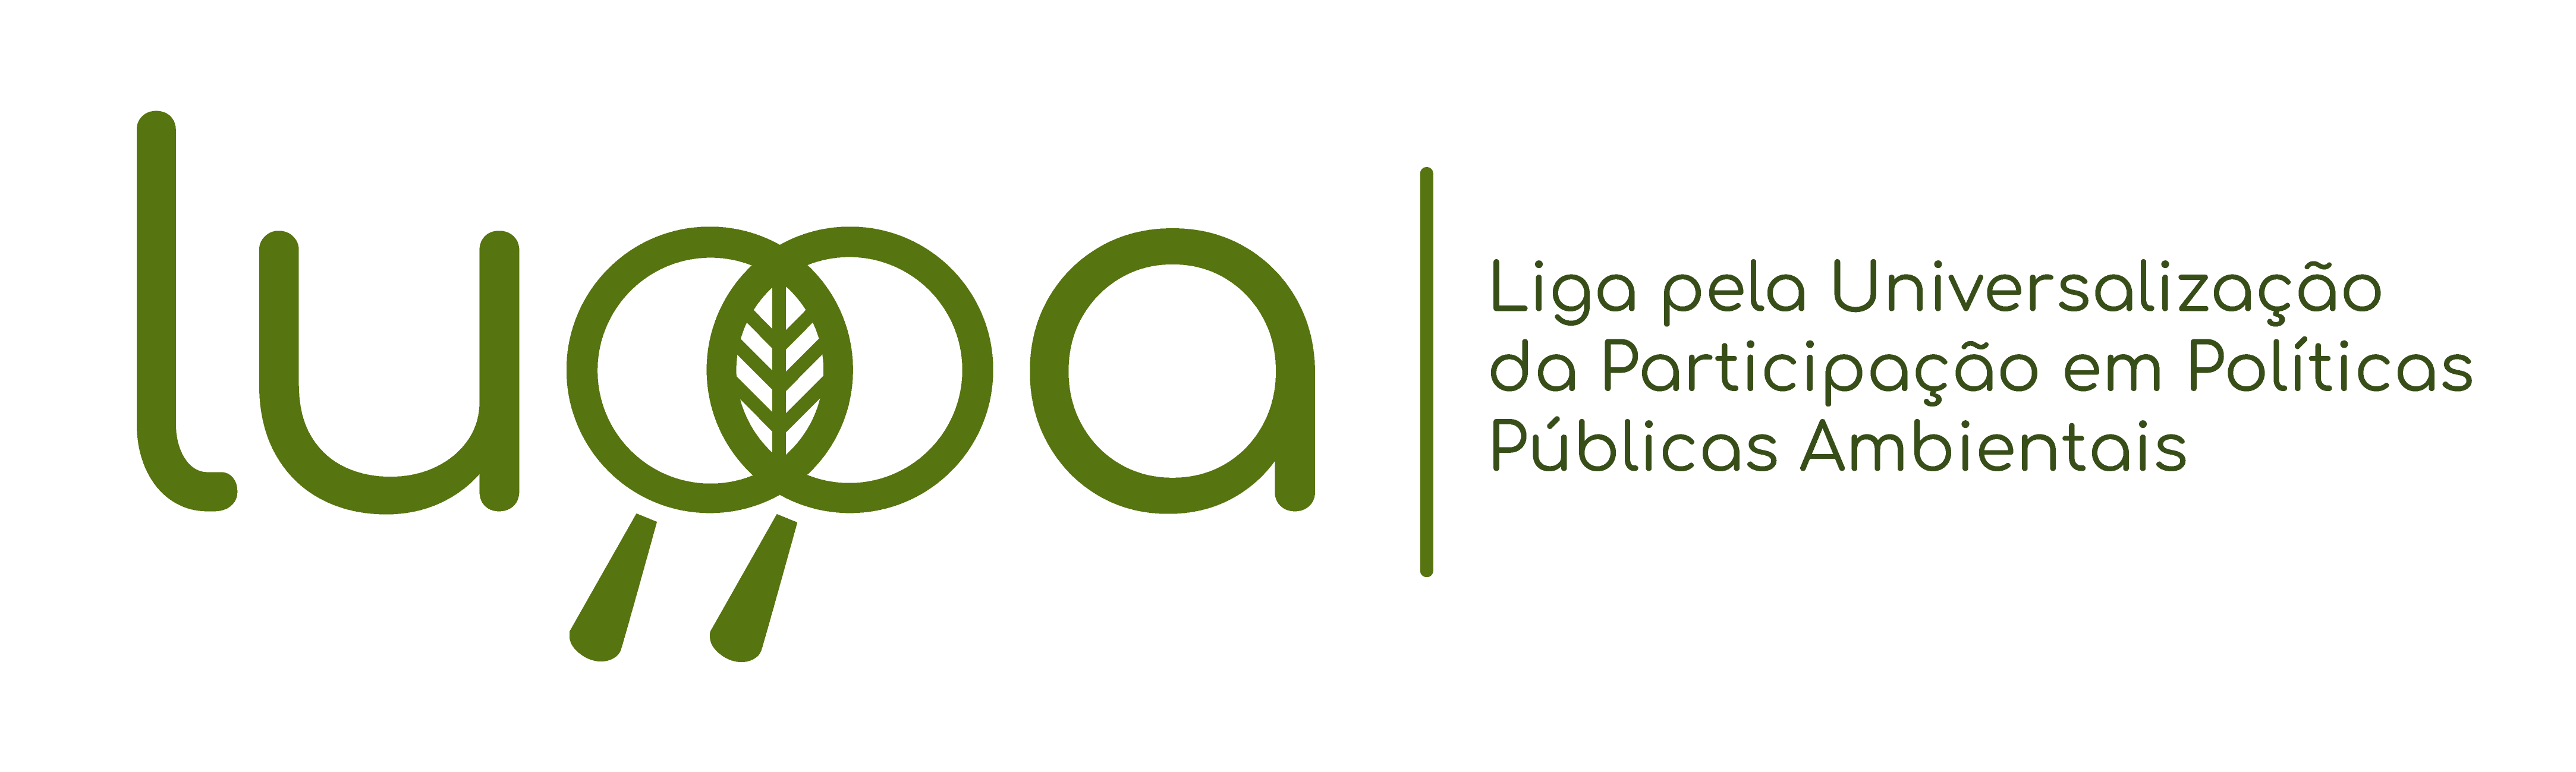 logo-luppa-com-nome-portugues-verde